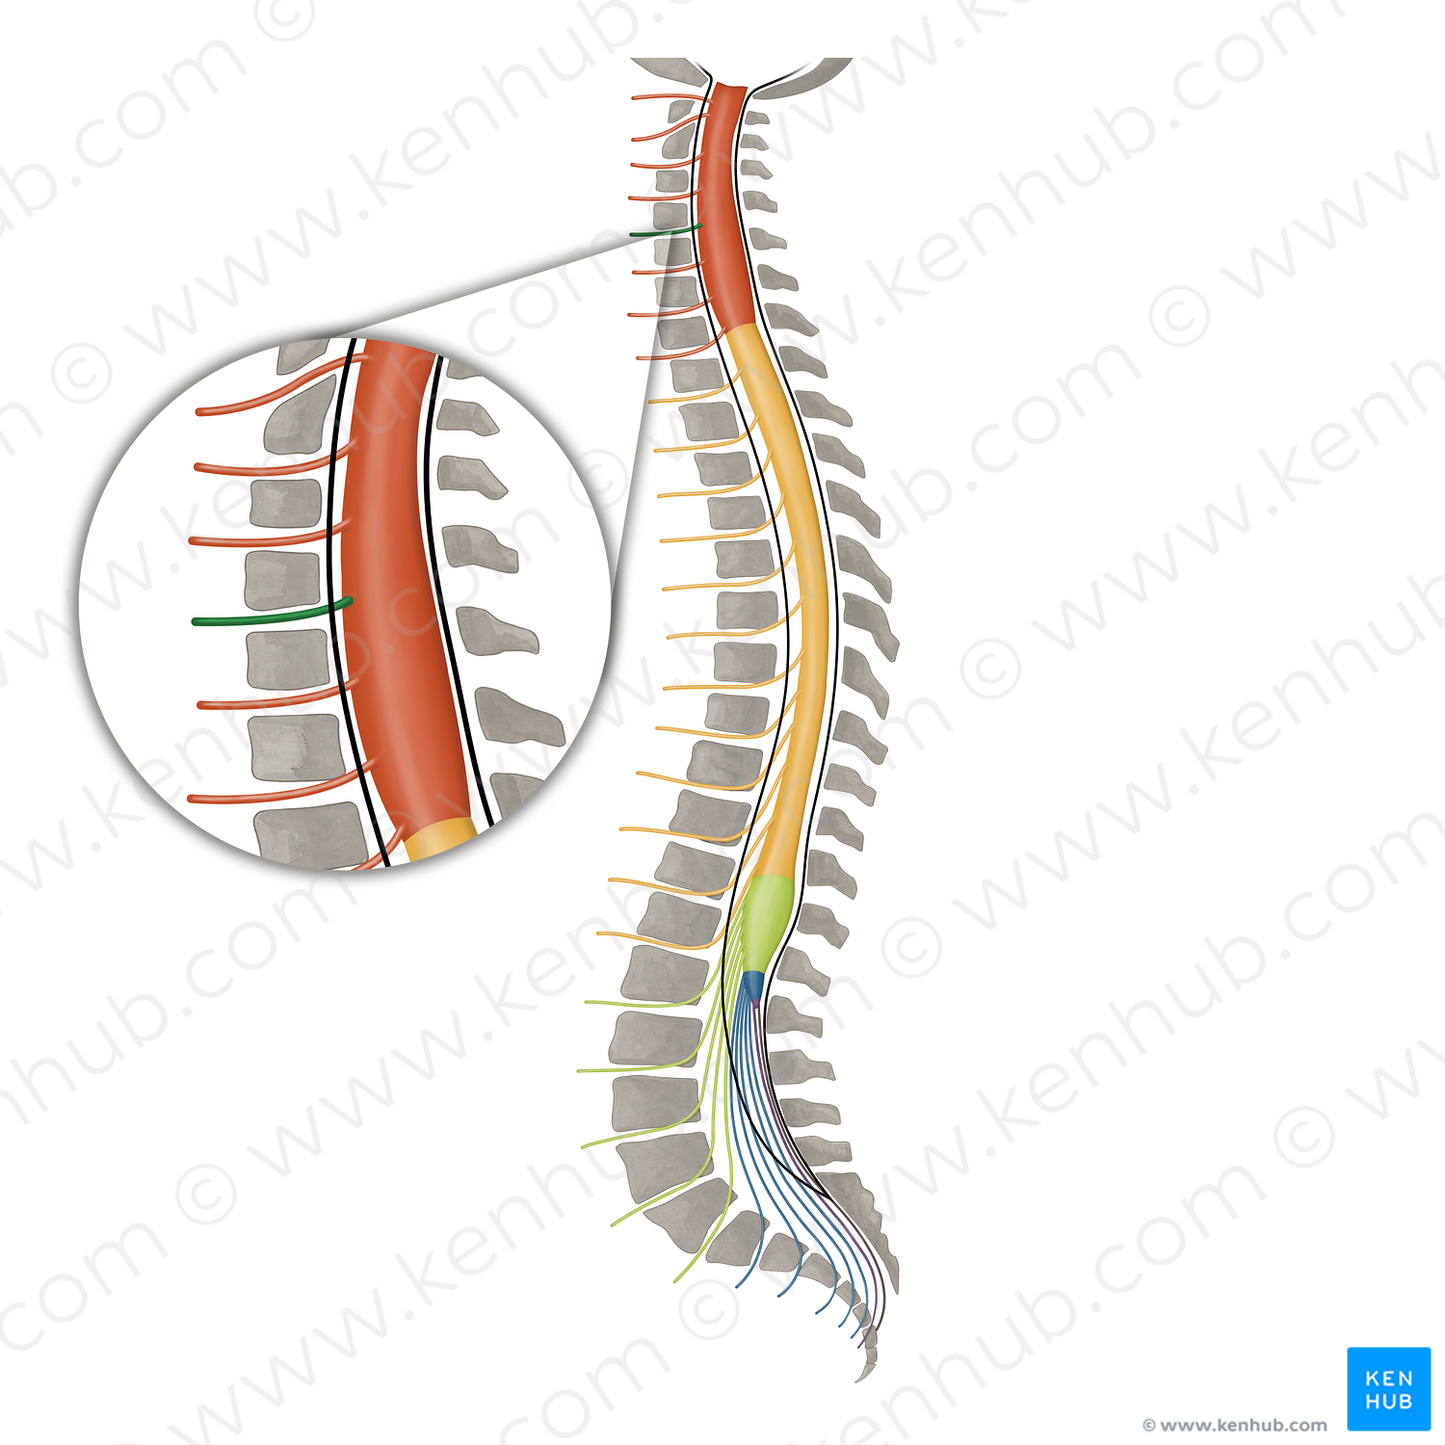 Spinal nerve C5 (#16094)